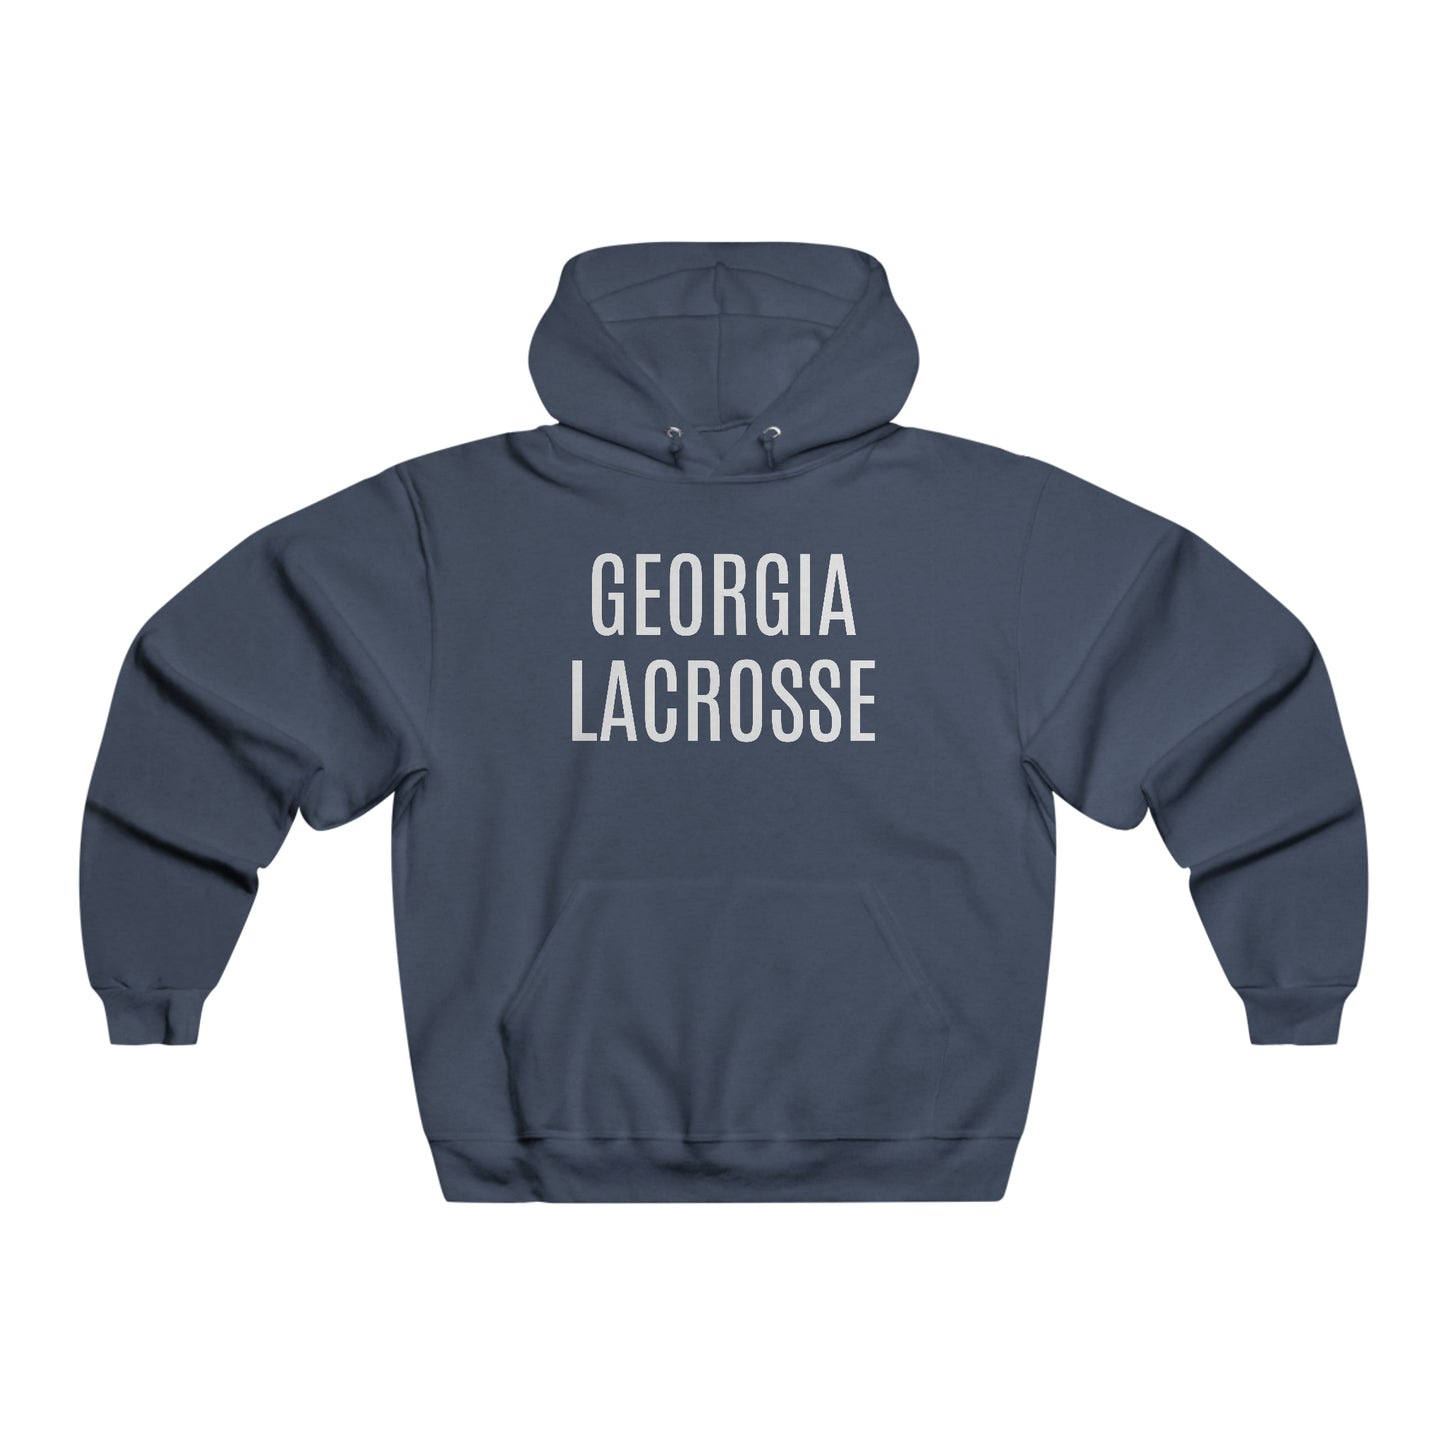 Georgia Lacrosse Hooded Sweatshirt